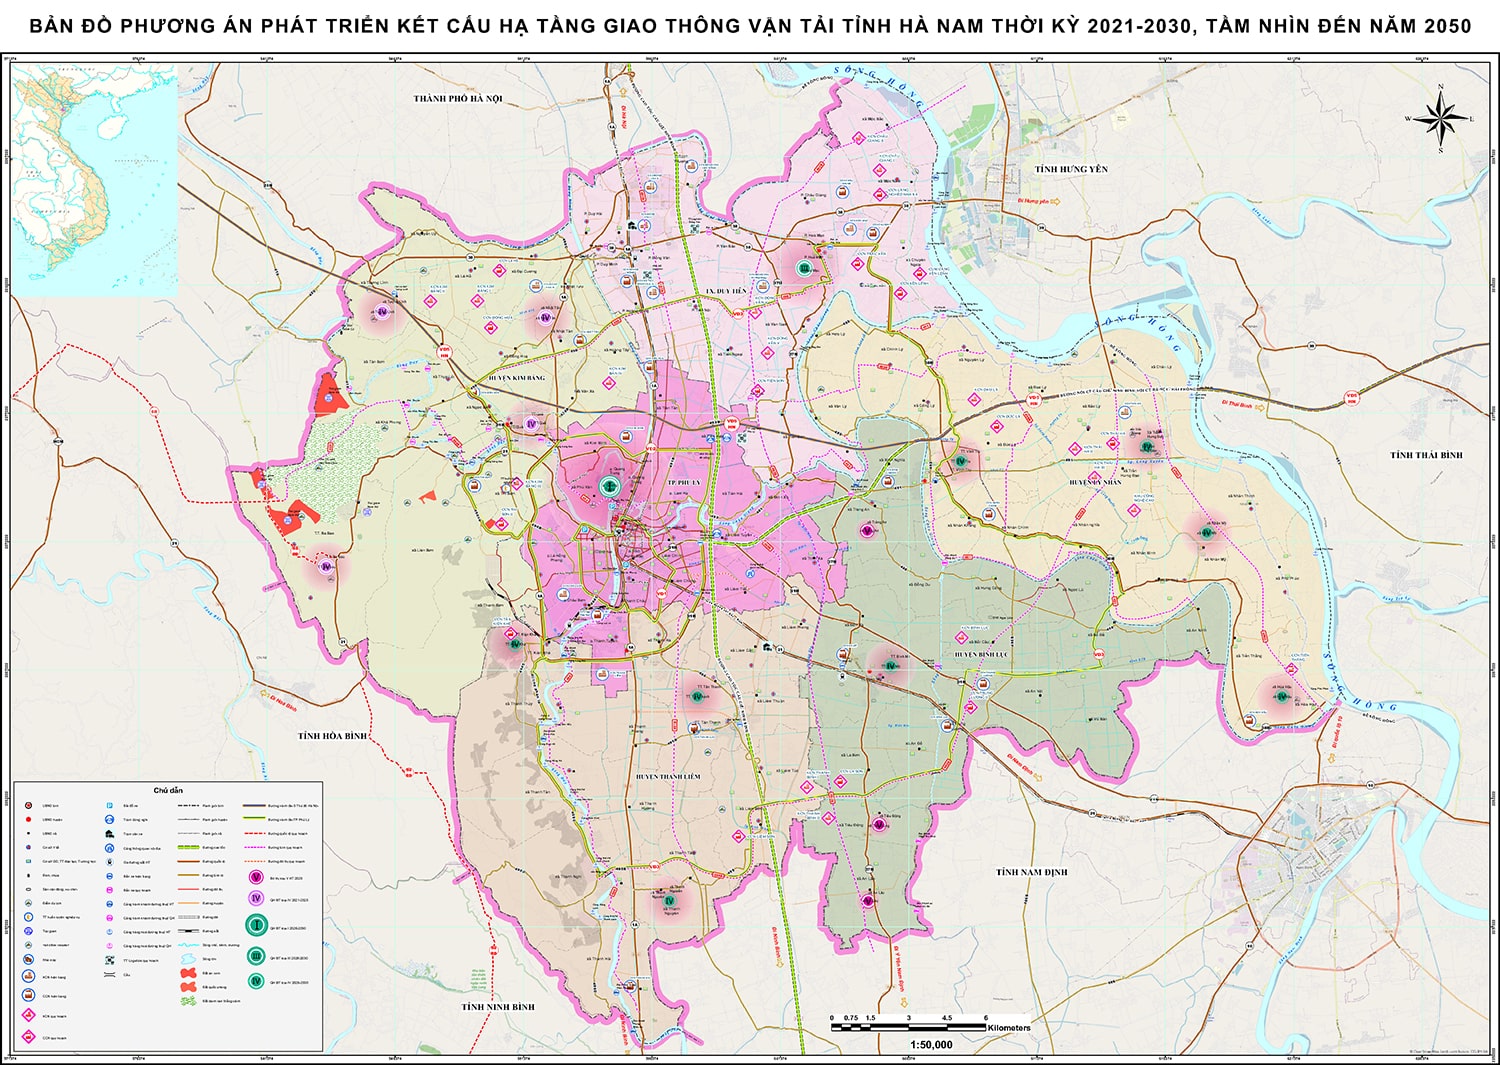 Quy hoạch giao thông tỉnh Hà Nam thời kỳ 2021 - 2030, tầm nhìn năm 2050